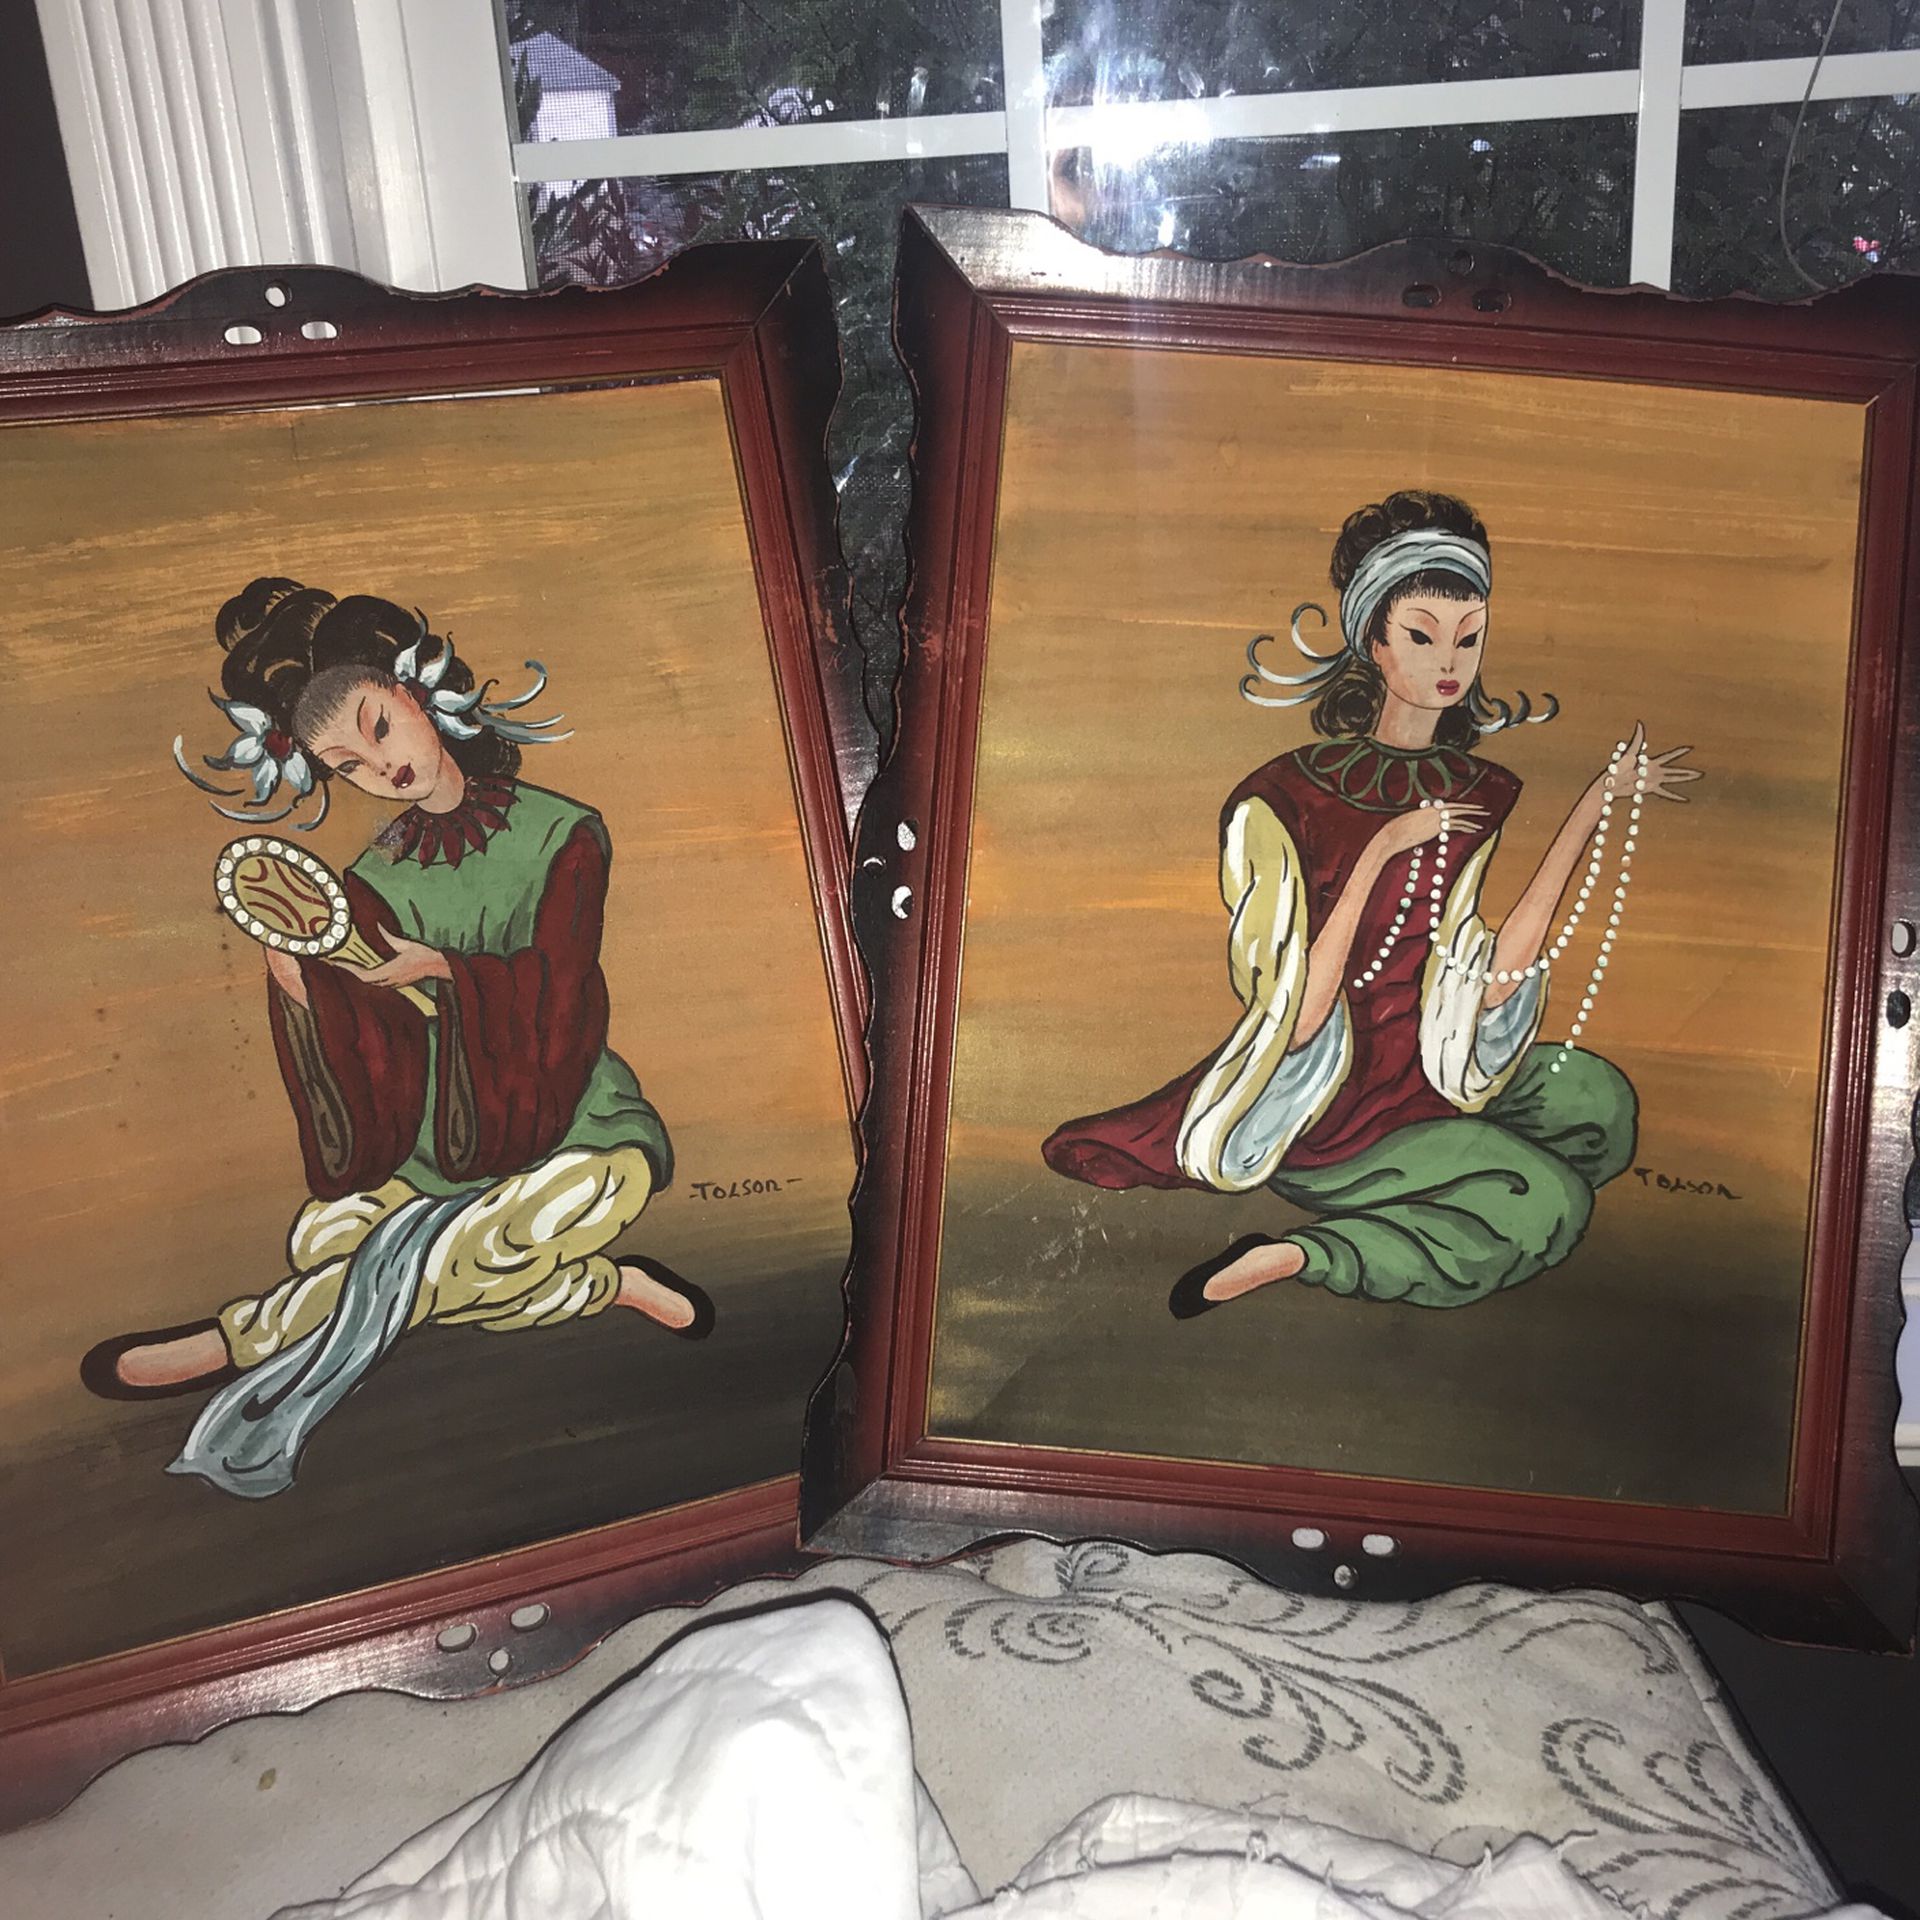 2 Vintage Japanese Tolson Paintings 